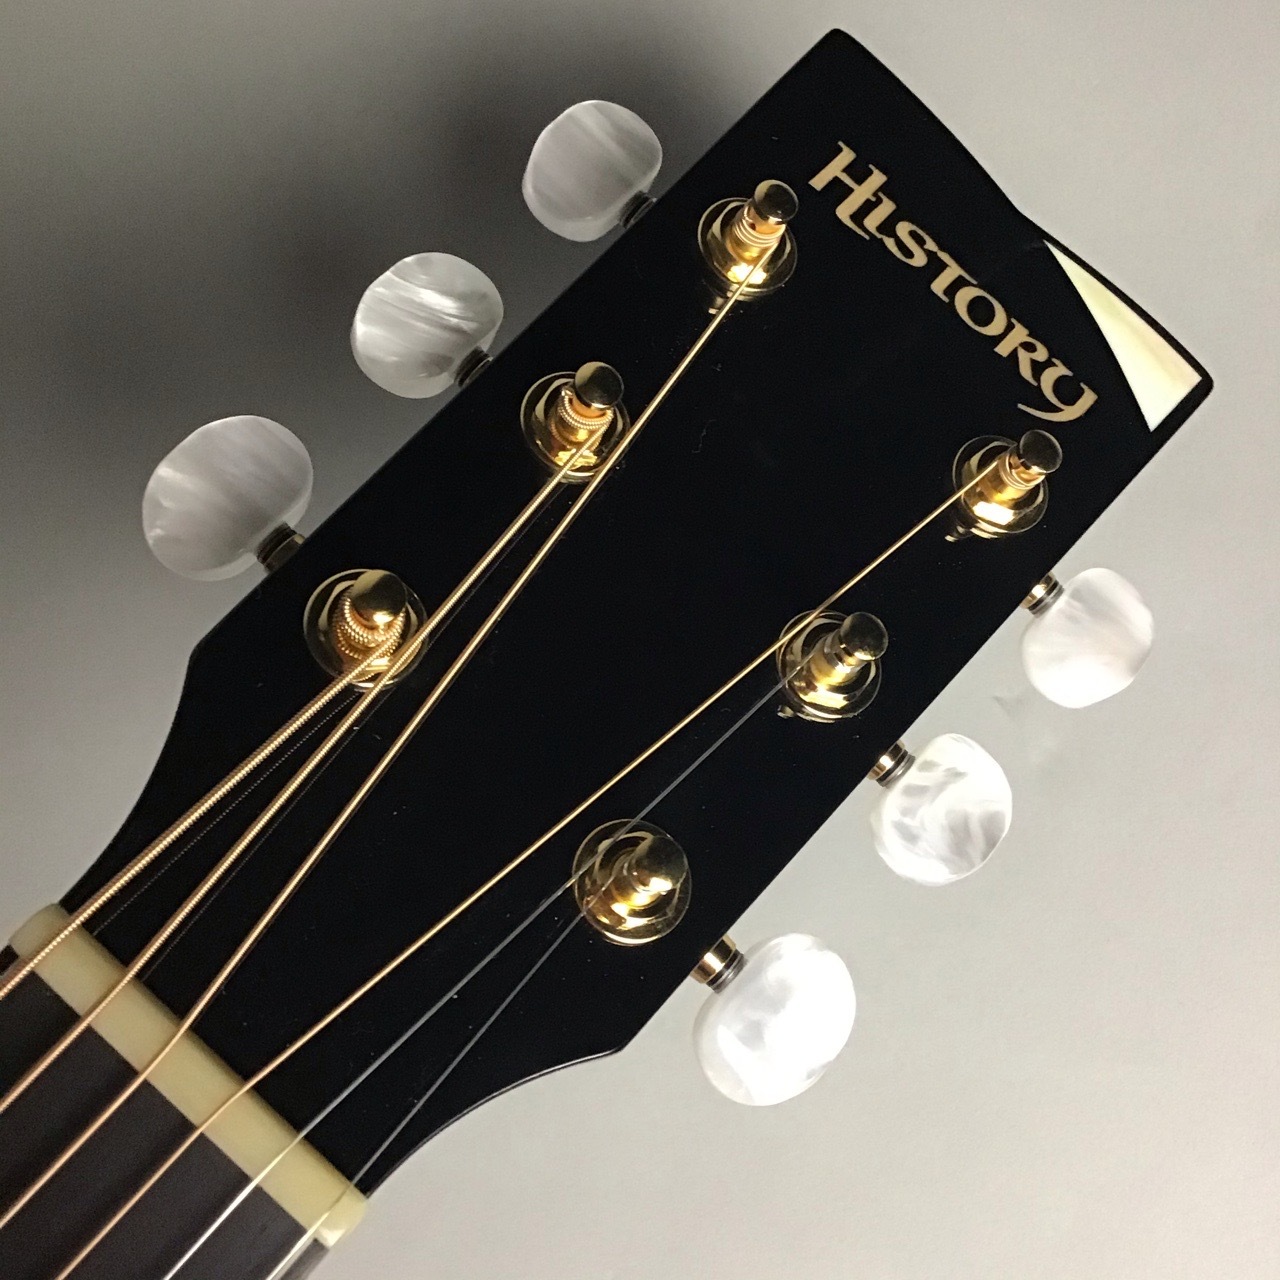 HISTORY NT-301 エレアコ あいみょん使用ギター 生産終了モデル - 楽器 